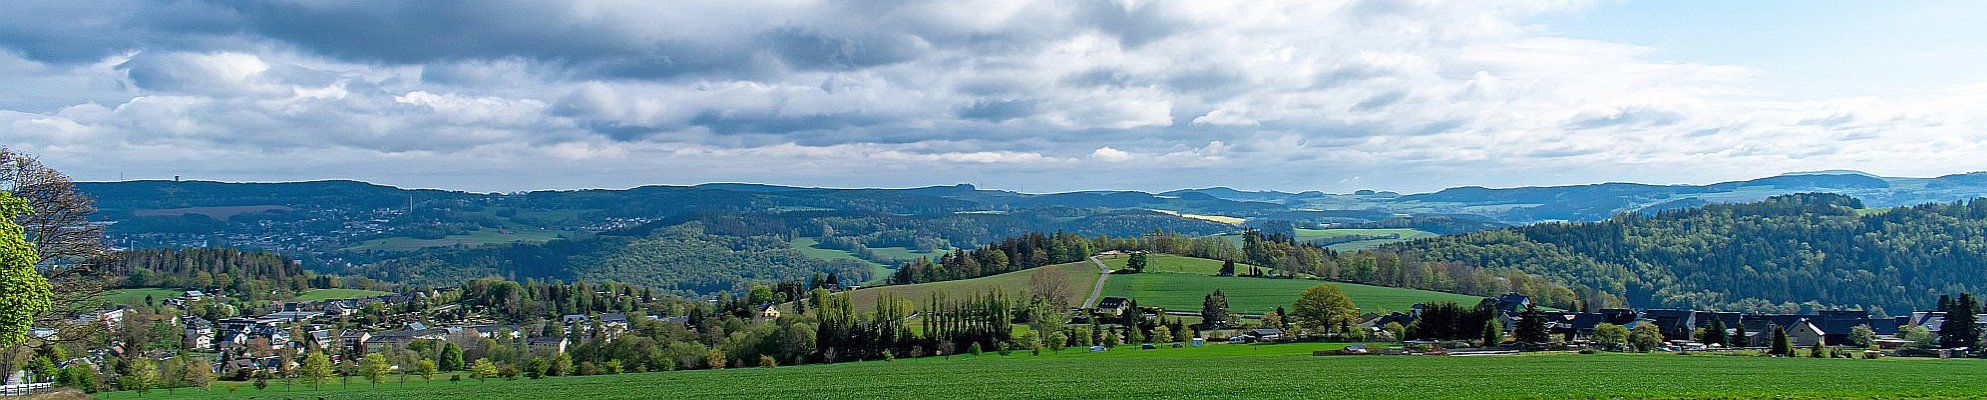 Panoramareise durch das Vogtland © Cornell Fruehauf auf Pixabay